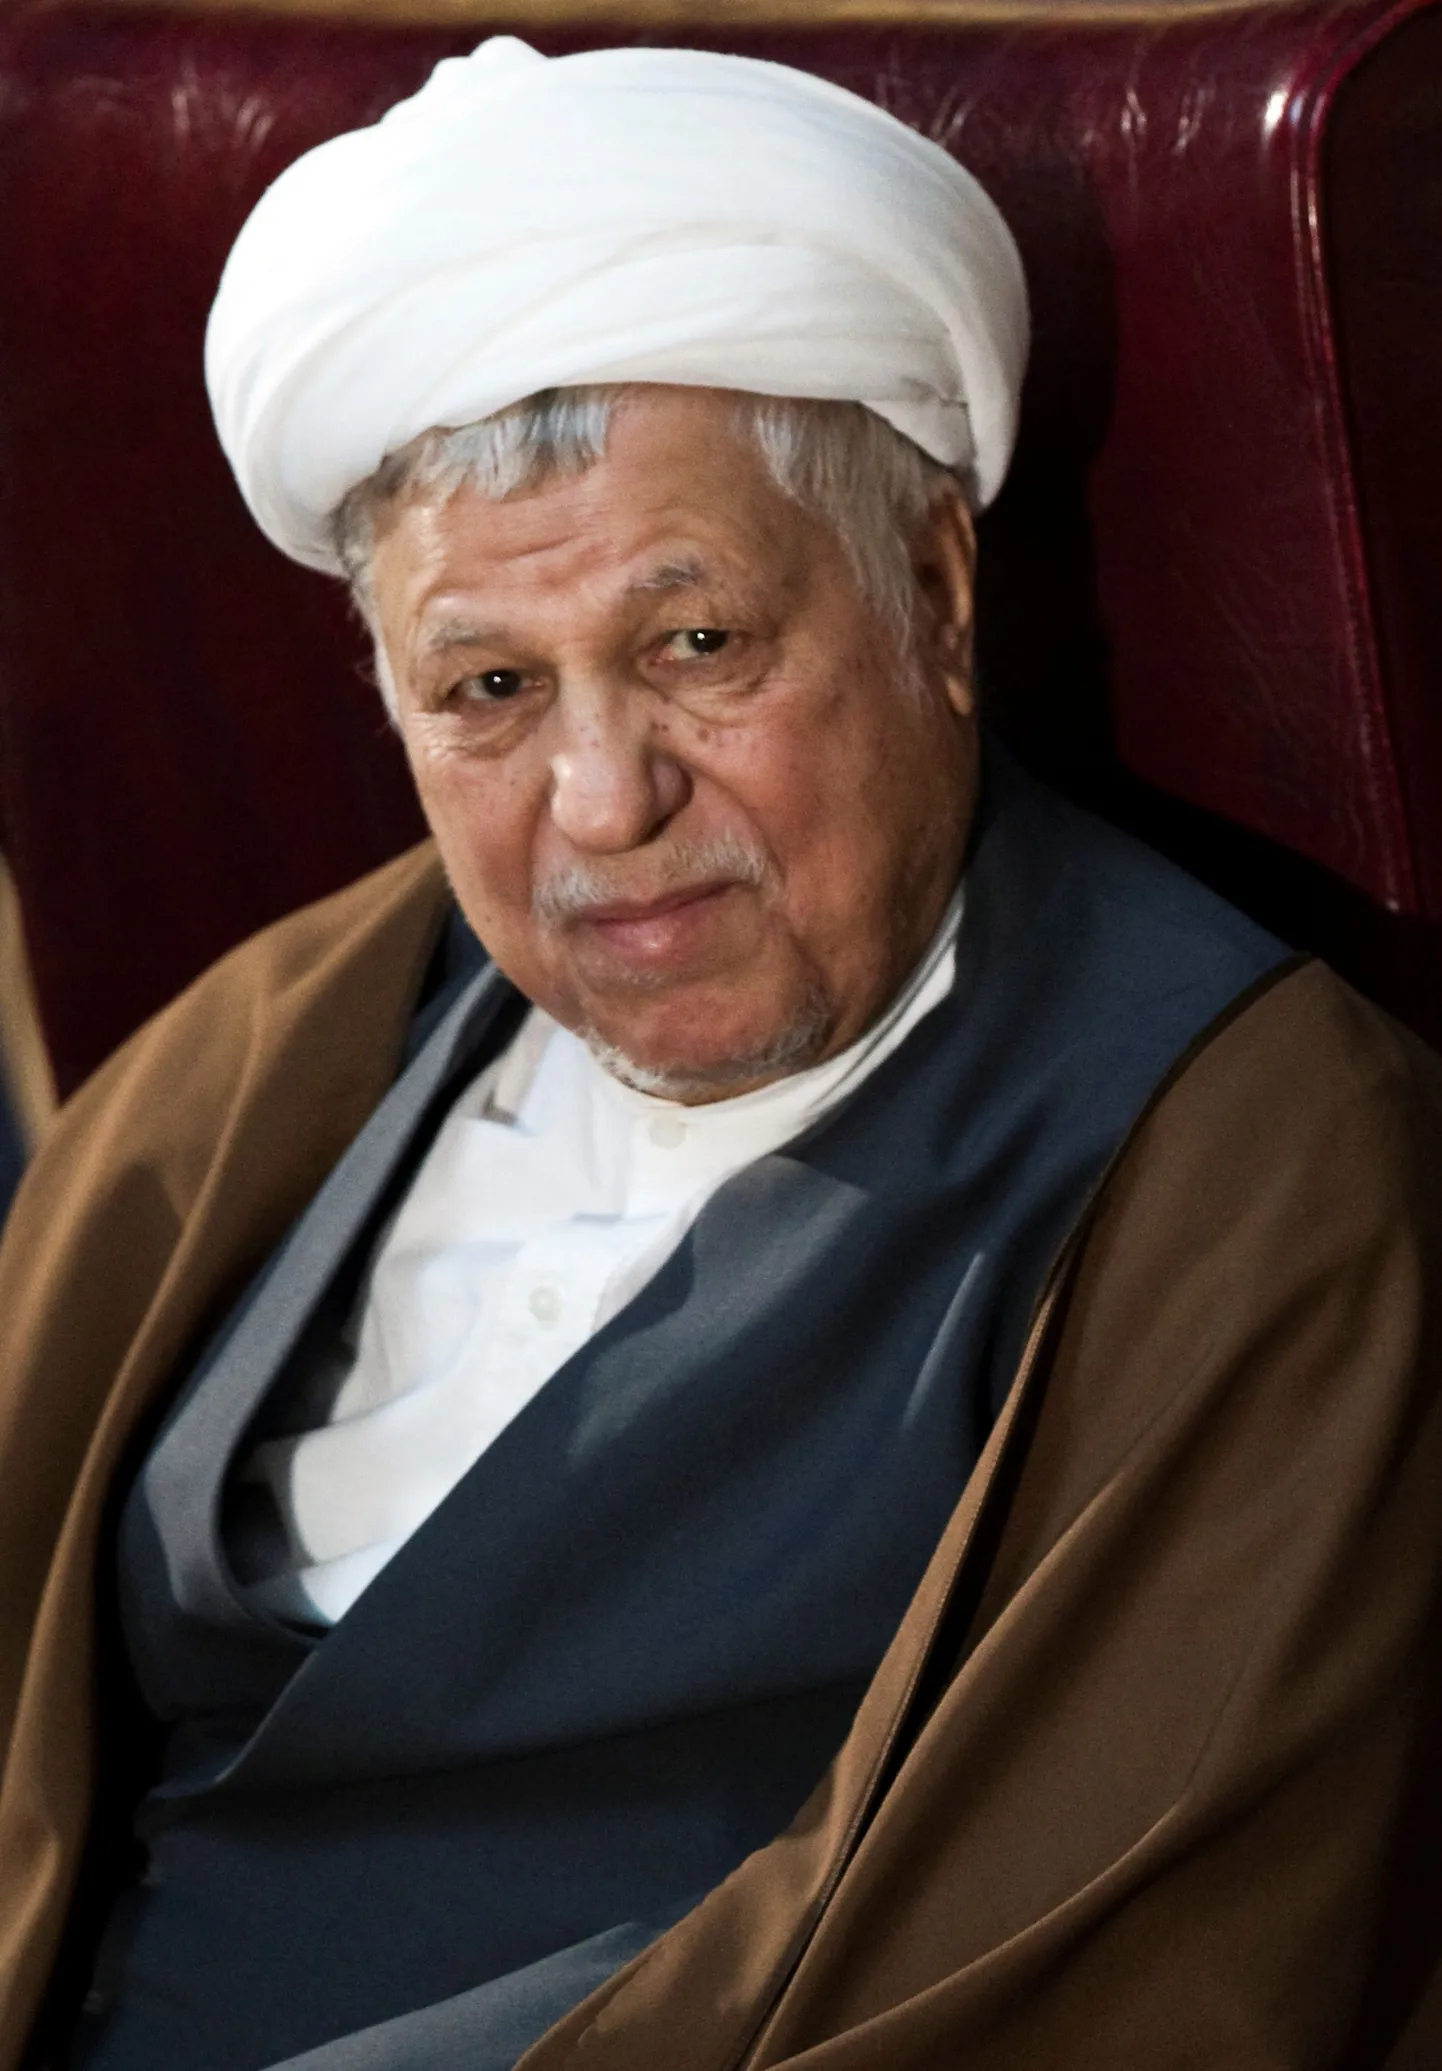 Iraani endine president Akbar Hashemi Rafsanjani